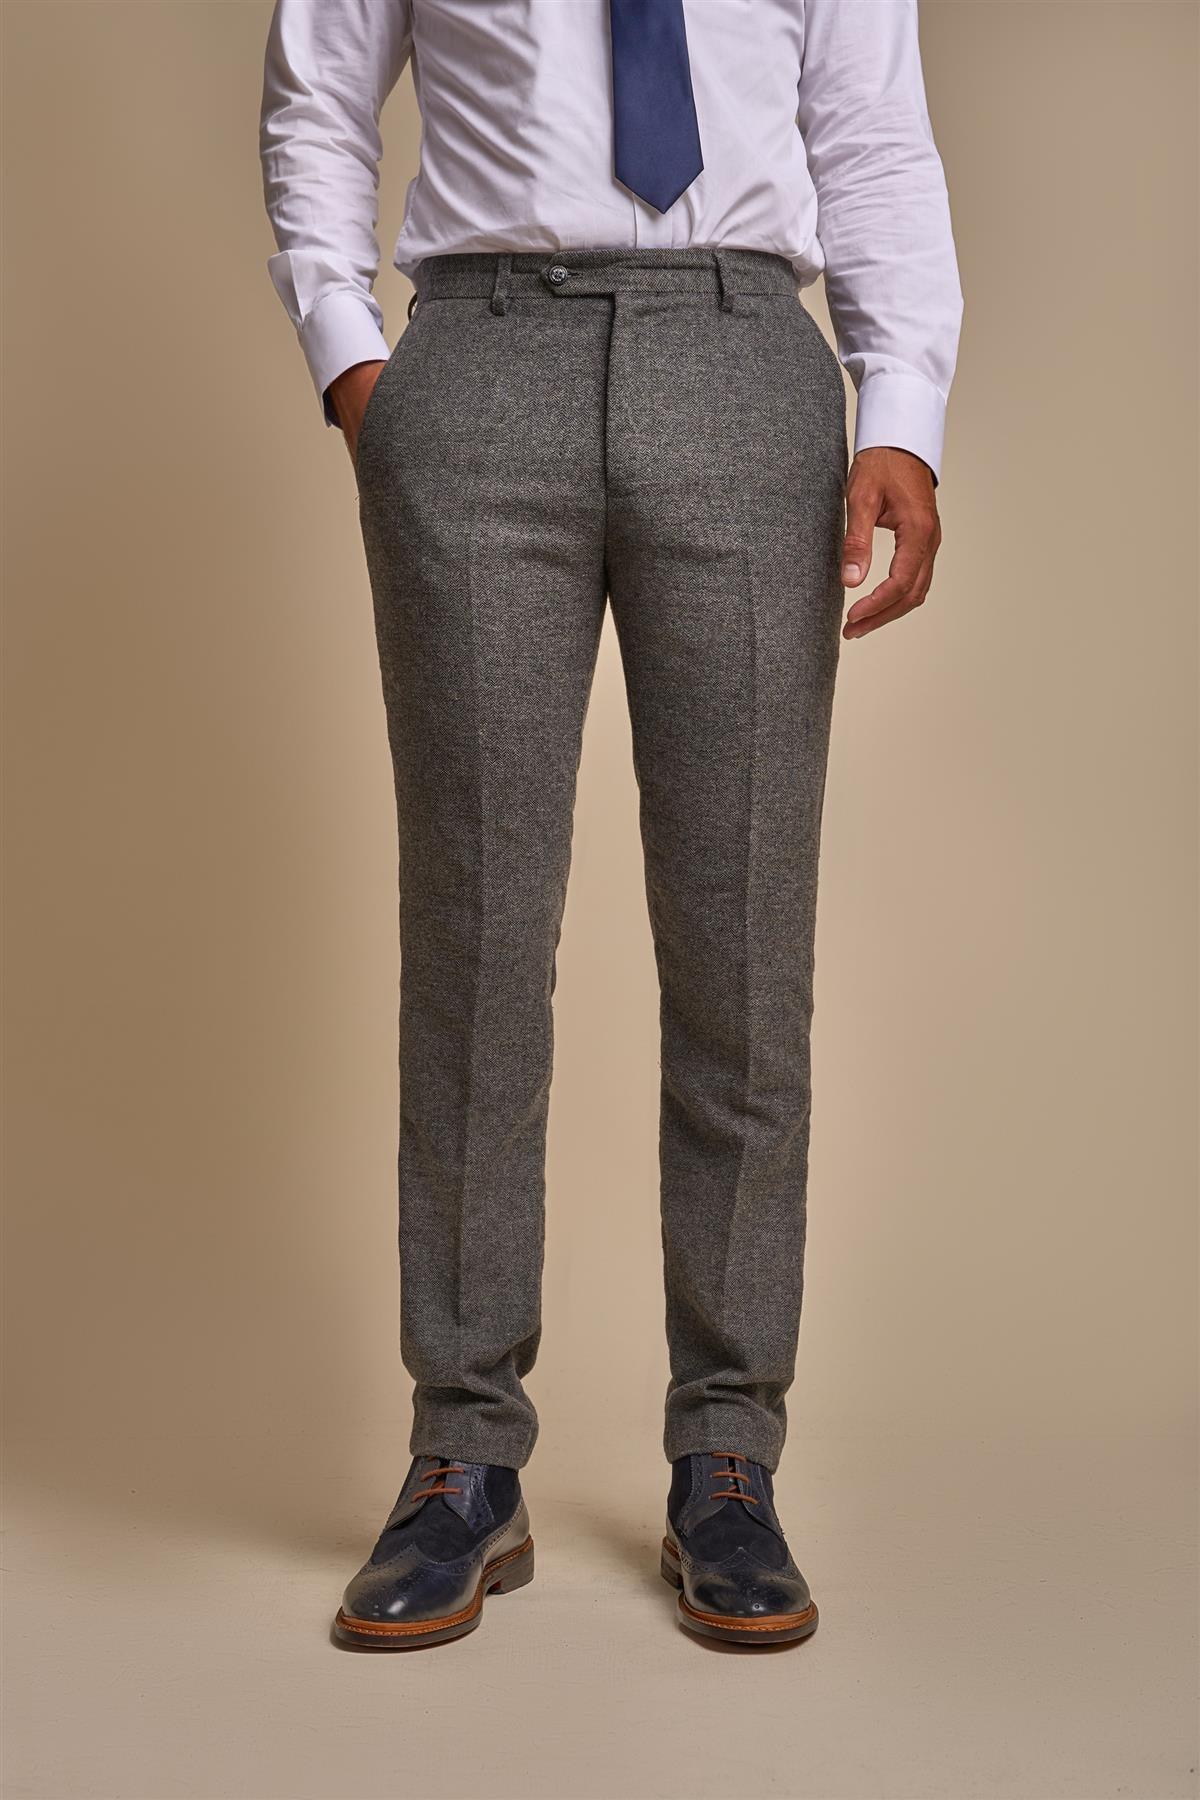 Martez Grey Trouser Front